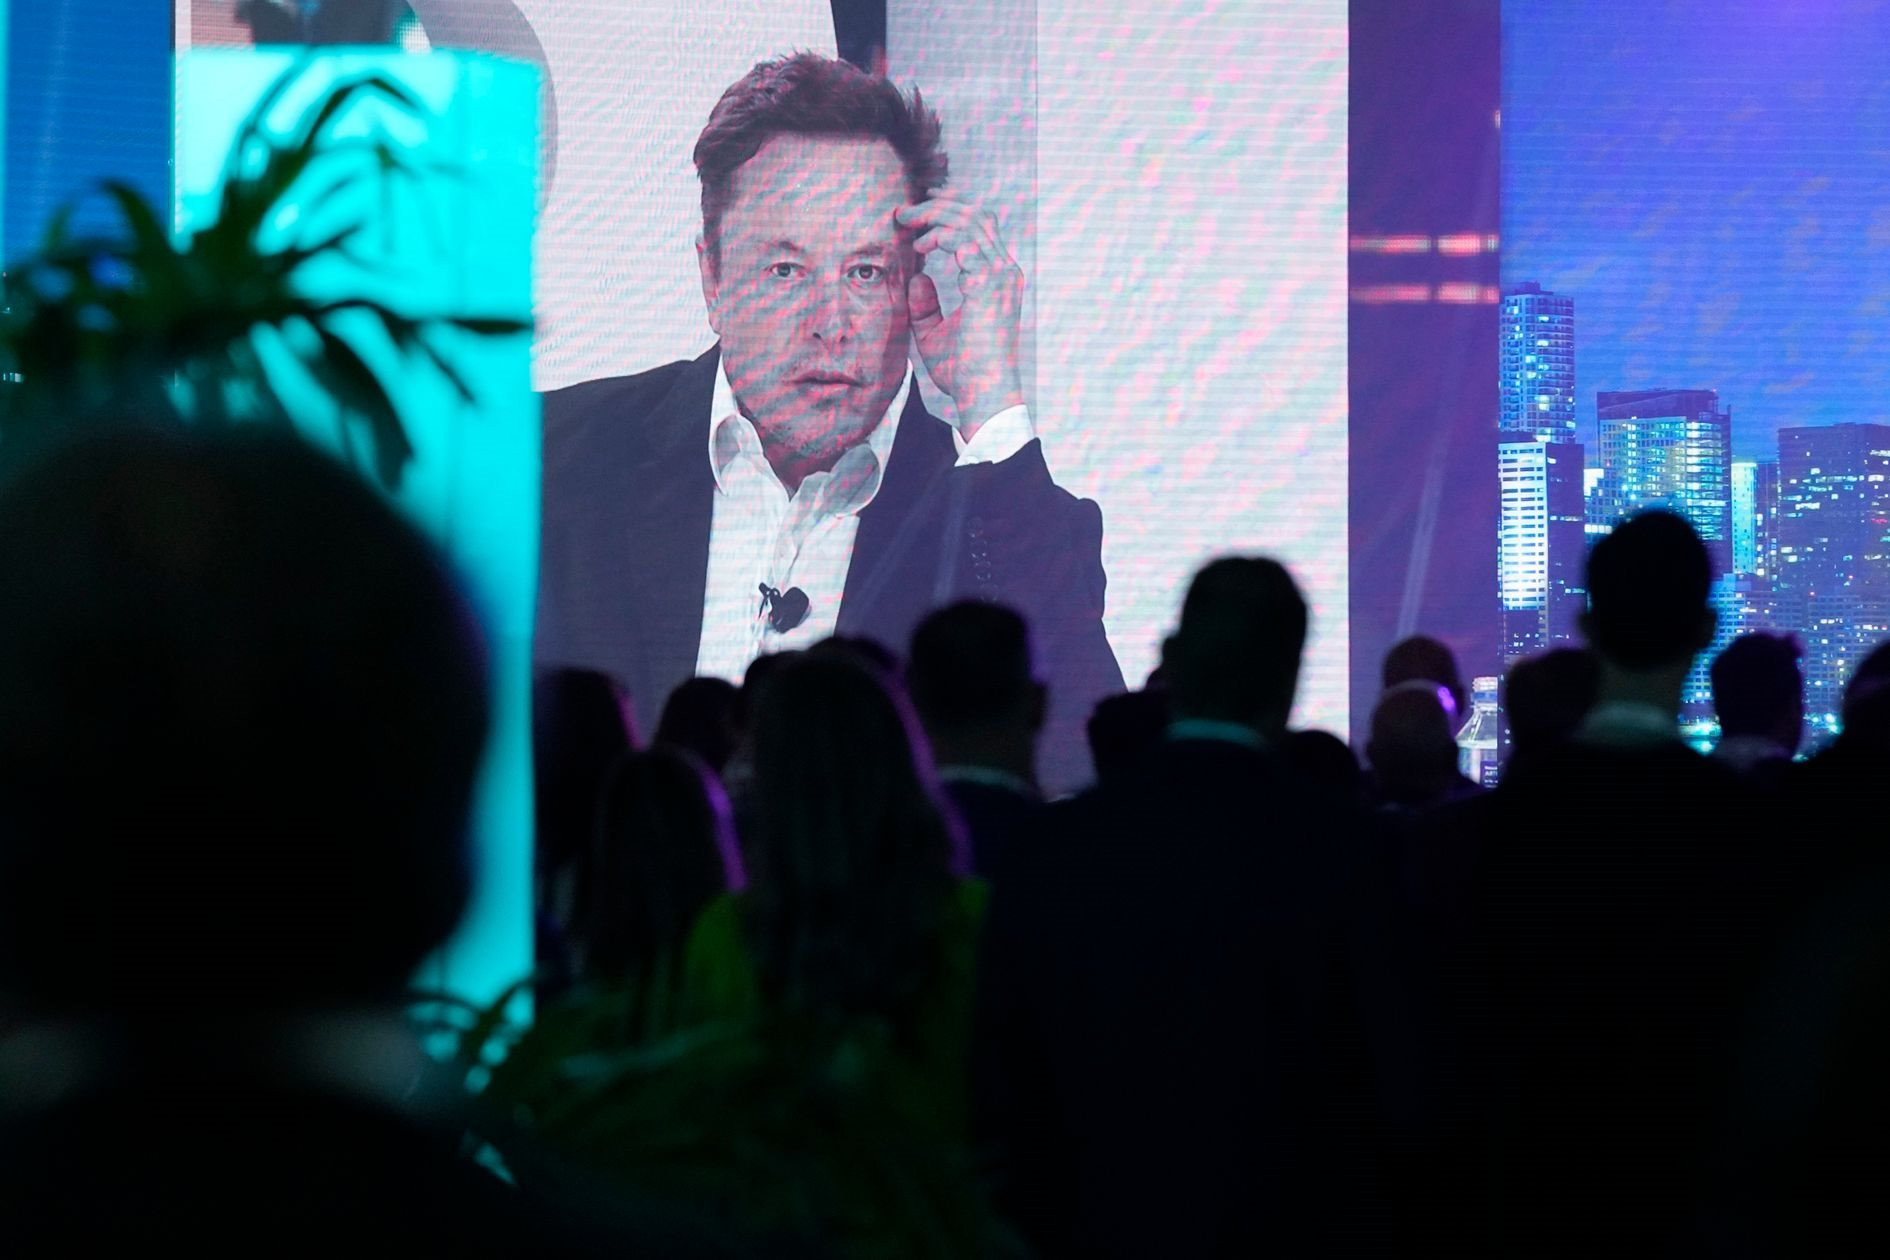 'Superman' Elon Musk khởi nghiệp 1 lần nữa ở tuổi 51: Thành lập startup có tên X.AI, tham vọng trở thành ‘nhà nghiên cứu loài’ bảo vệ toàn nhân loại - Ảnh 2.